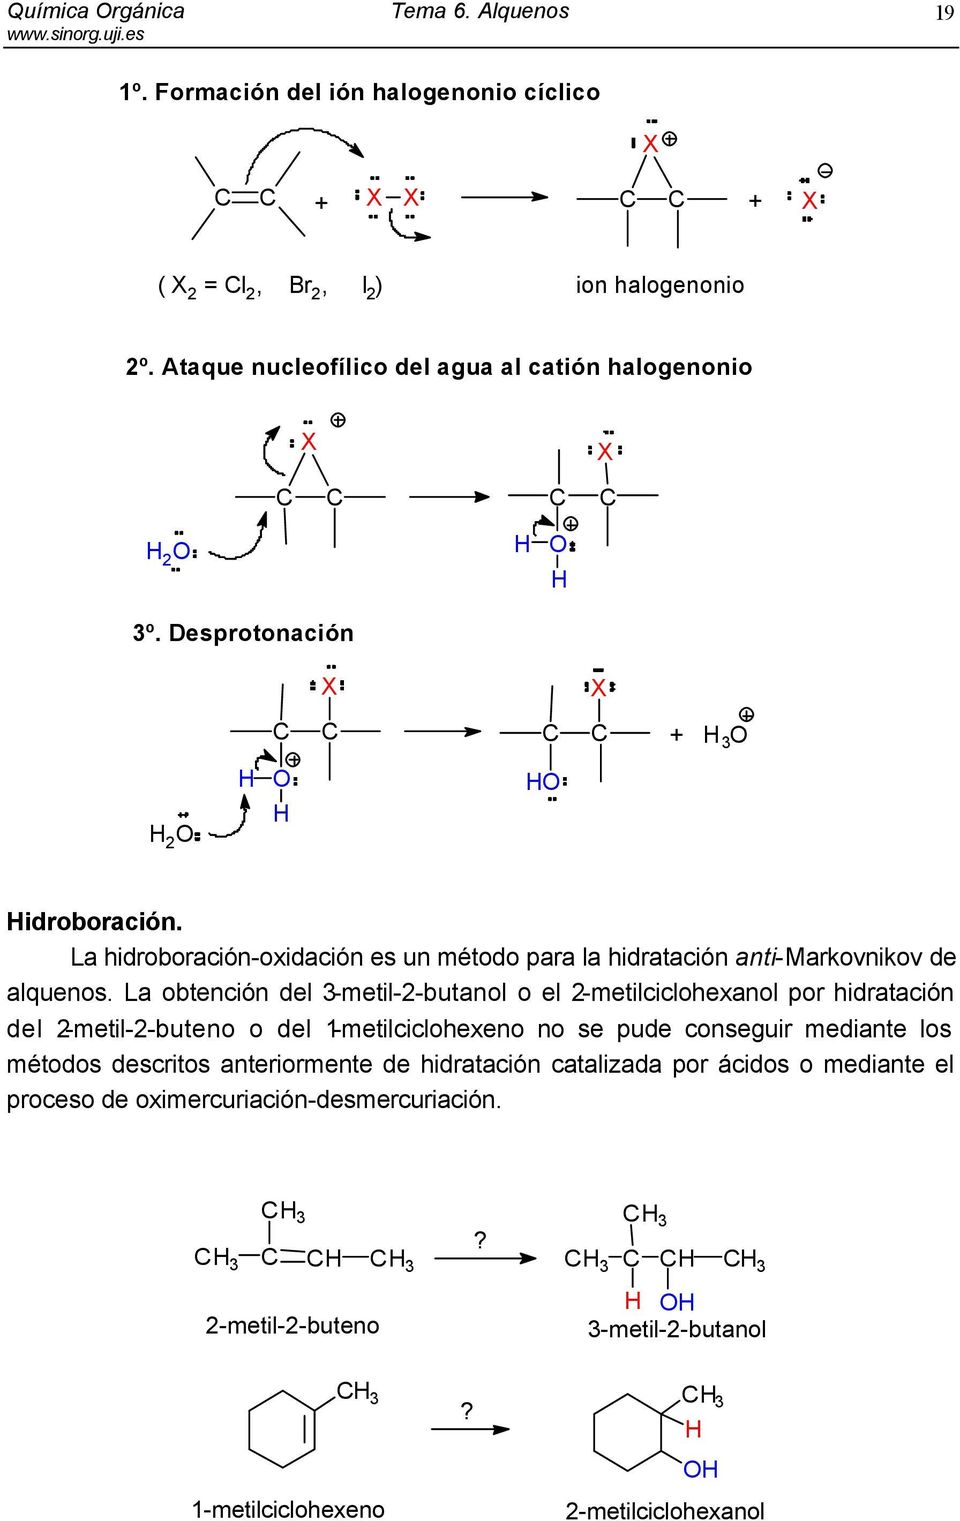 La hidroboración-oxidación es un método para la hidratación anti-markovnikov de alquenos.